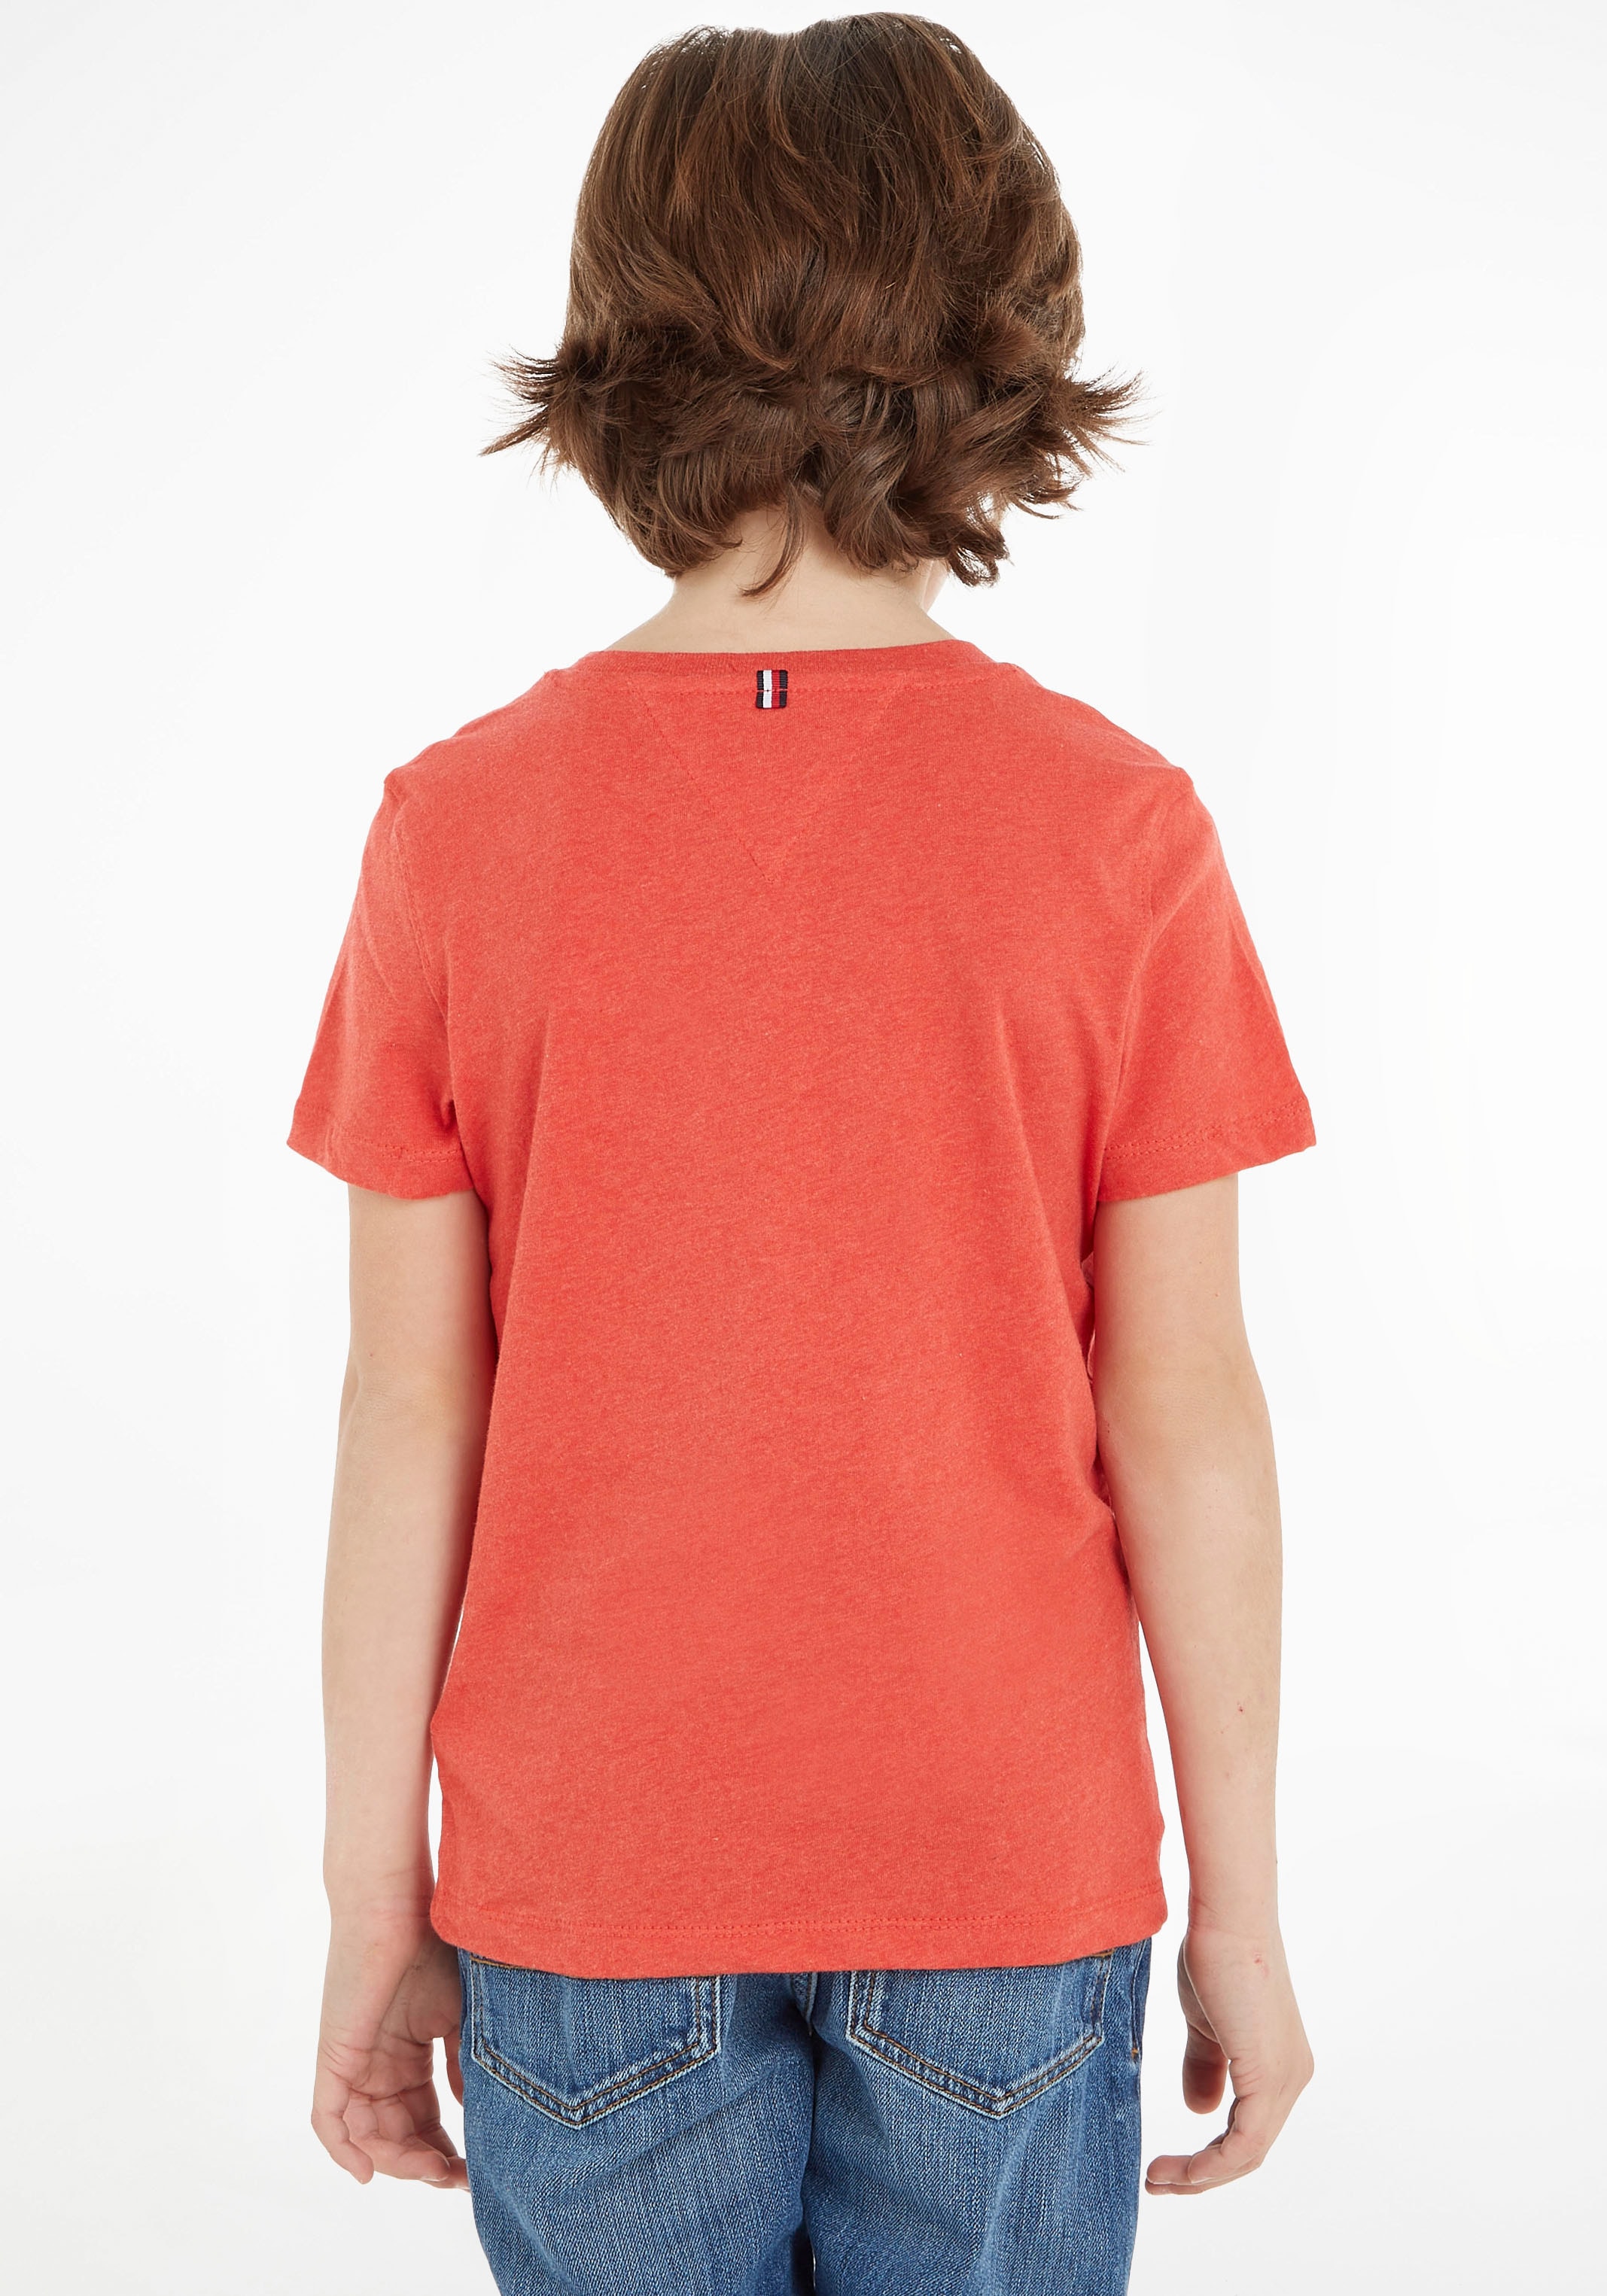 Tommy Hilfiger BASIC versandkostenfrei CN Kinder Kids MiniMe T-Shirt Junior »BOYS auf KNIT«